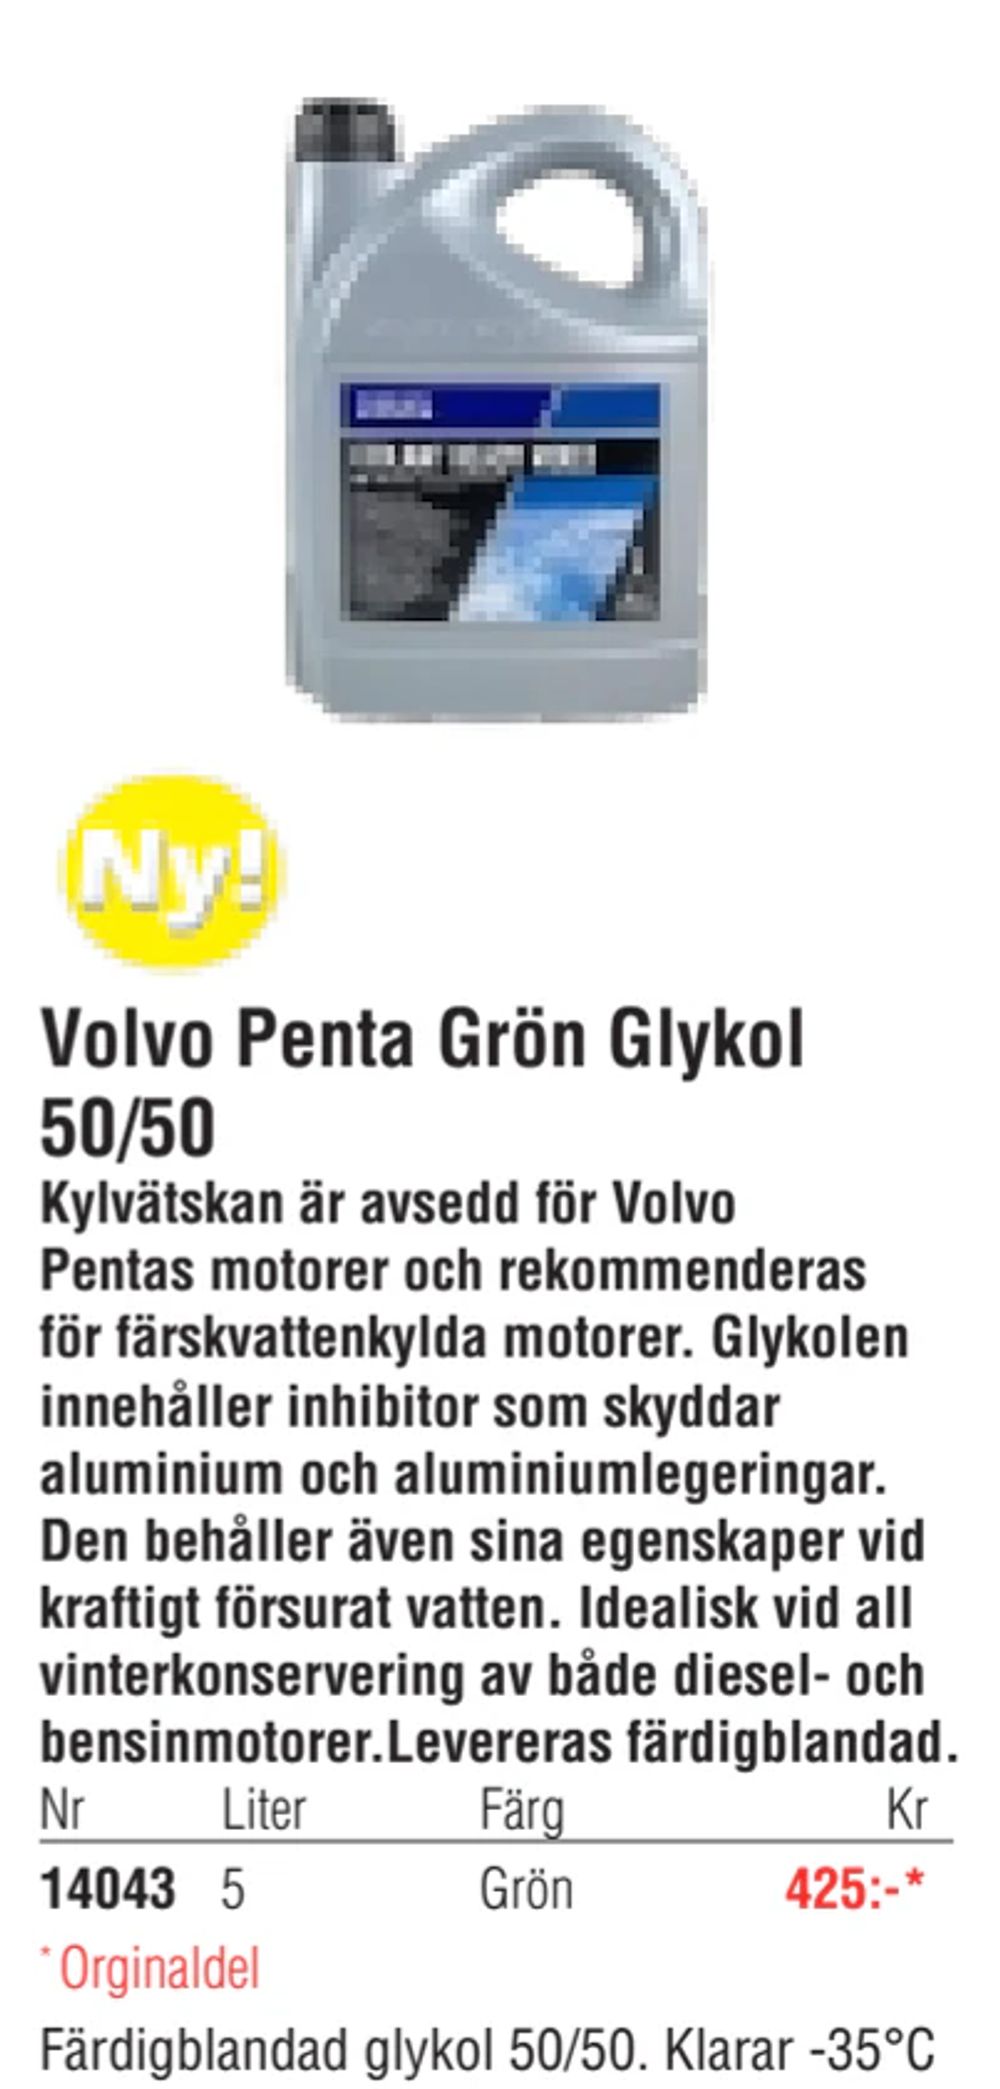 Erbjudanden på Volvo Penta Grön Glykol 50/50 från Erlandsons Brygga för 425 kr